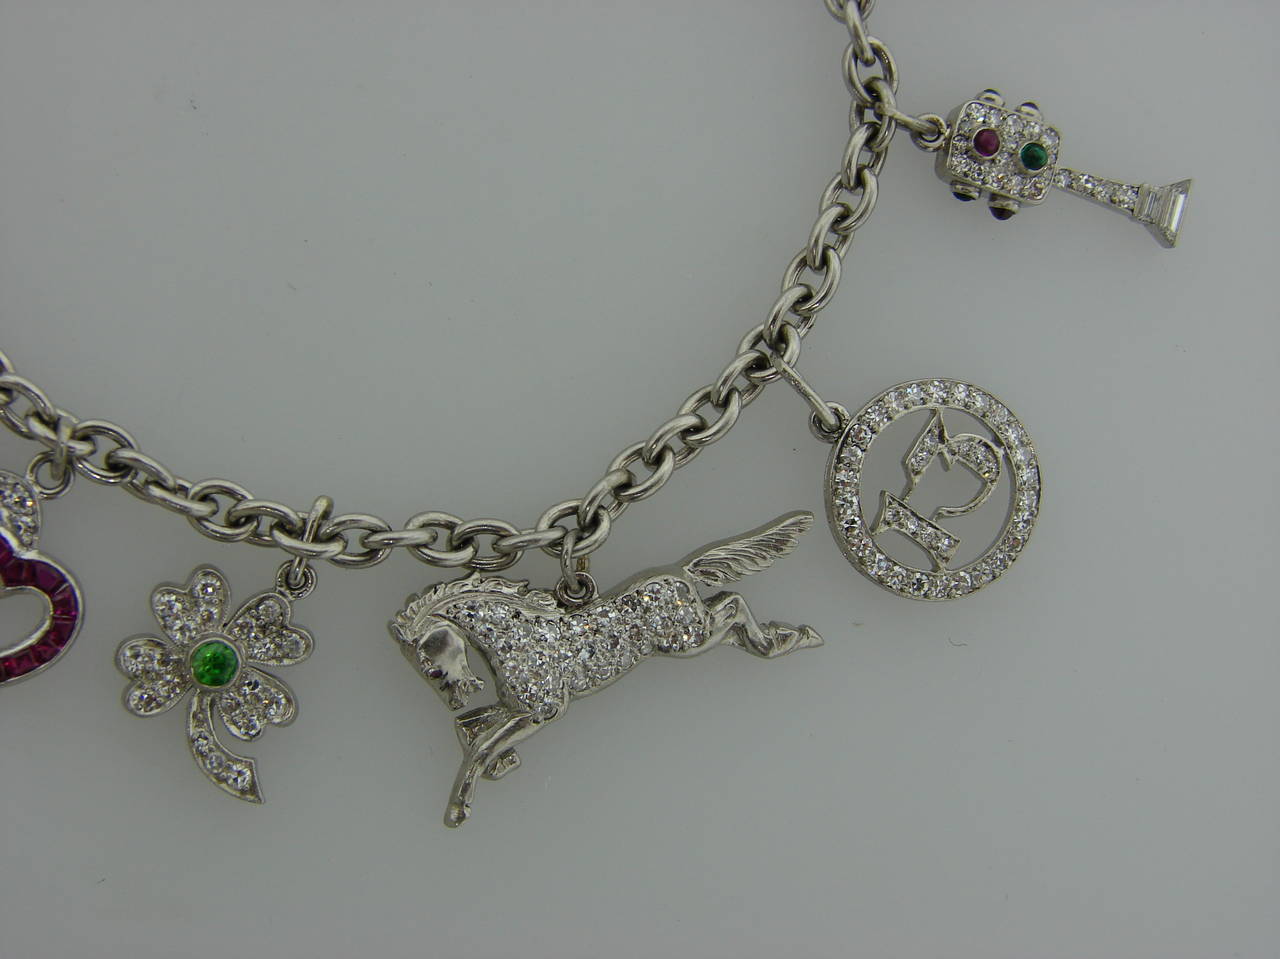 Y2K Aesthetic — Tiffany & Co. charm bracelet, an early 2000s